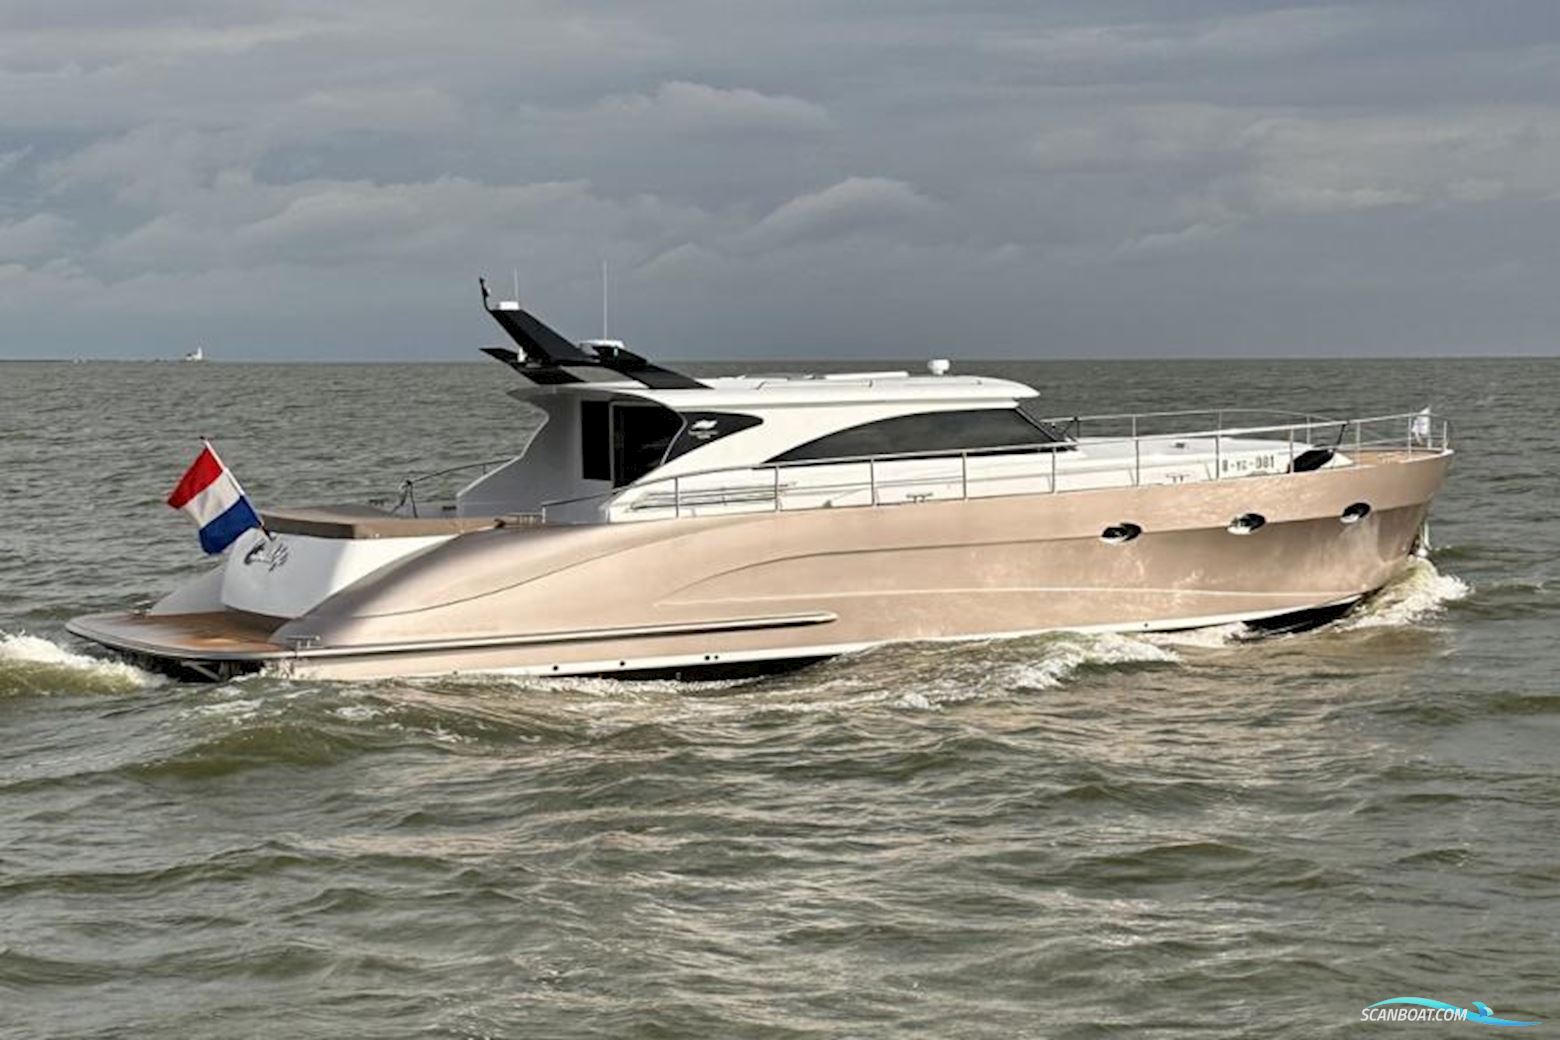 Van Der Heijden Exclusive Deluxe 1700 Motorboot 2023, mit Fpt 650 pk. motor, Niederlande